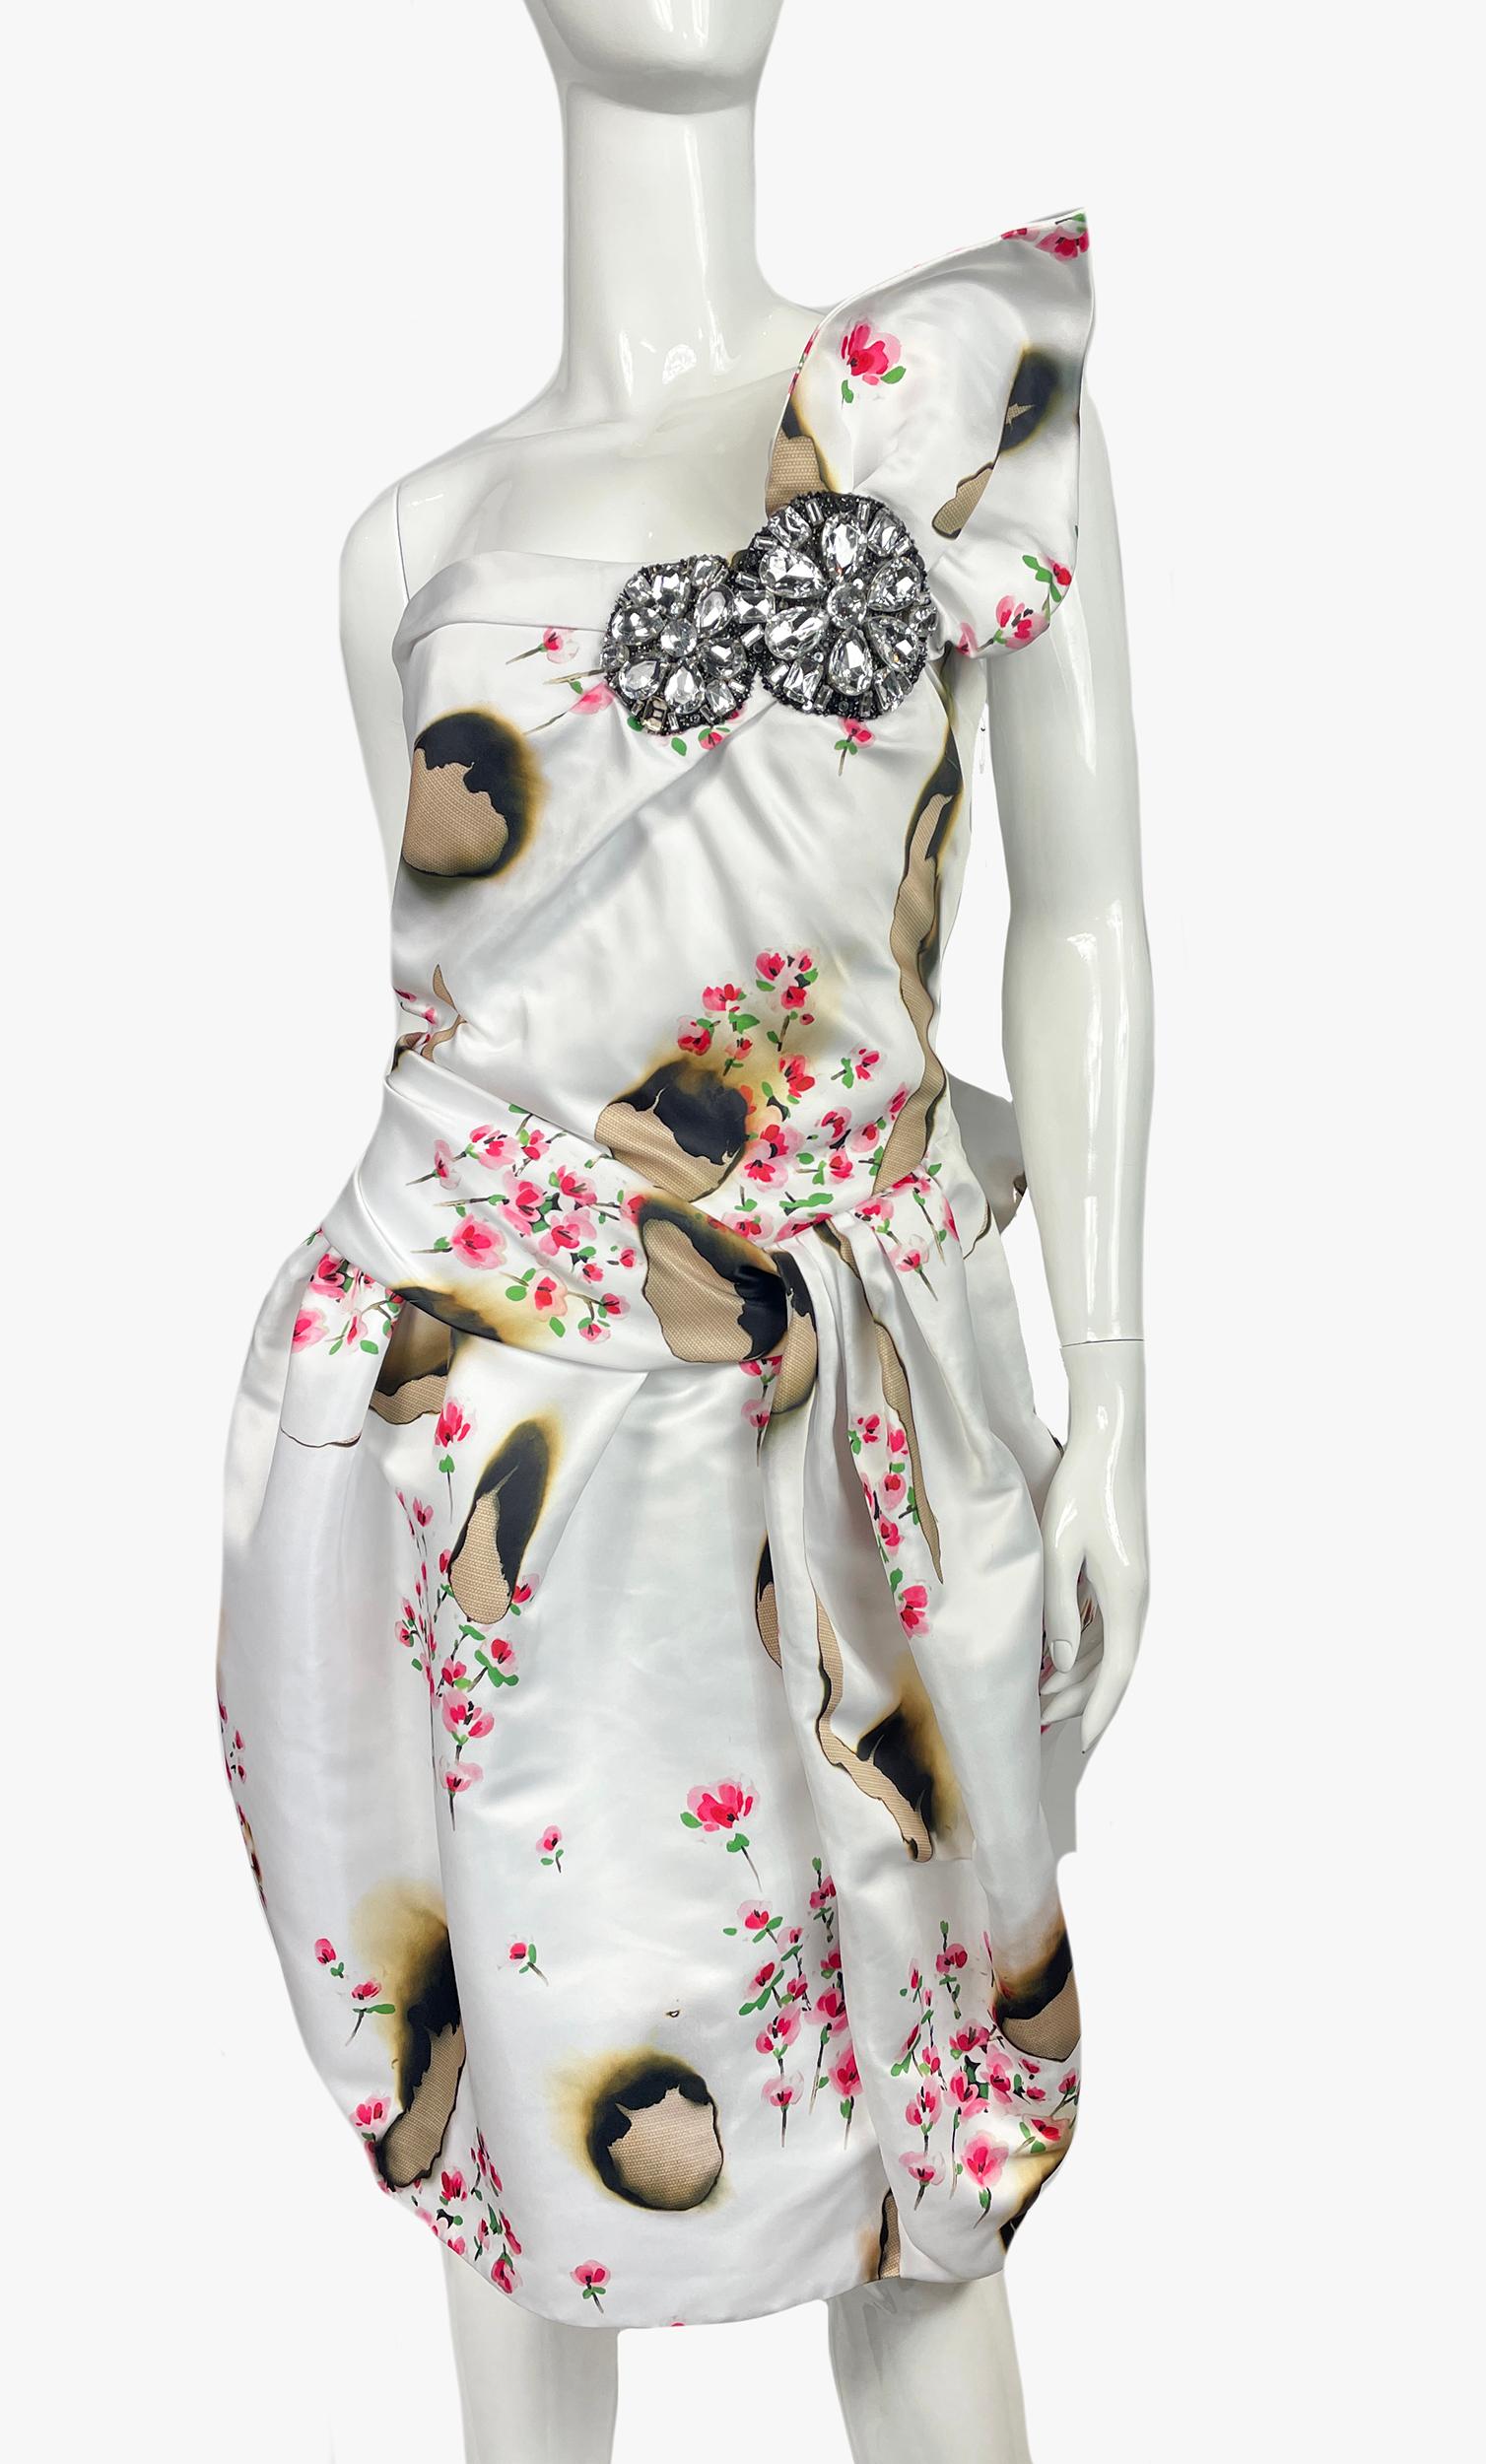 Superbe robe à imprimé floral Moschino Couture avec perles, paillettes et cristaux. Sans manches, avec fermeture à glissière dissimulée sur le côté.
Période ; années 2000
Fabrice : 100 % polyester ; doublure 60 % acétate, 40 % rayonne ; combo 82 %